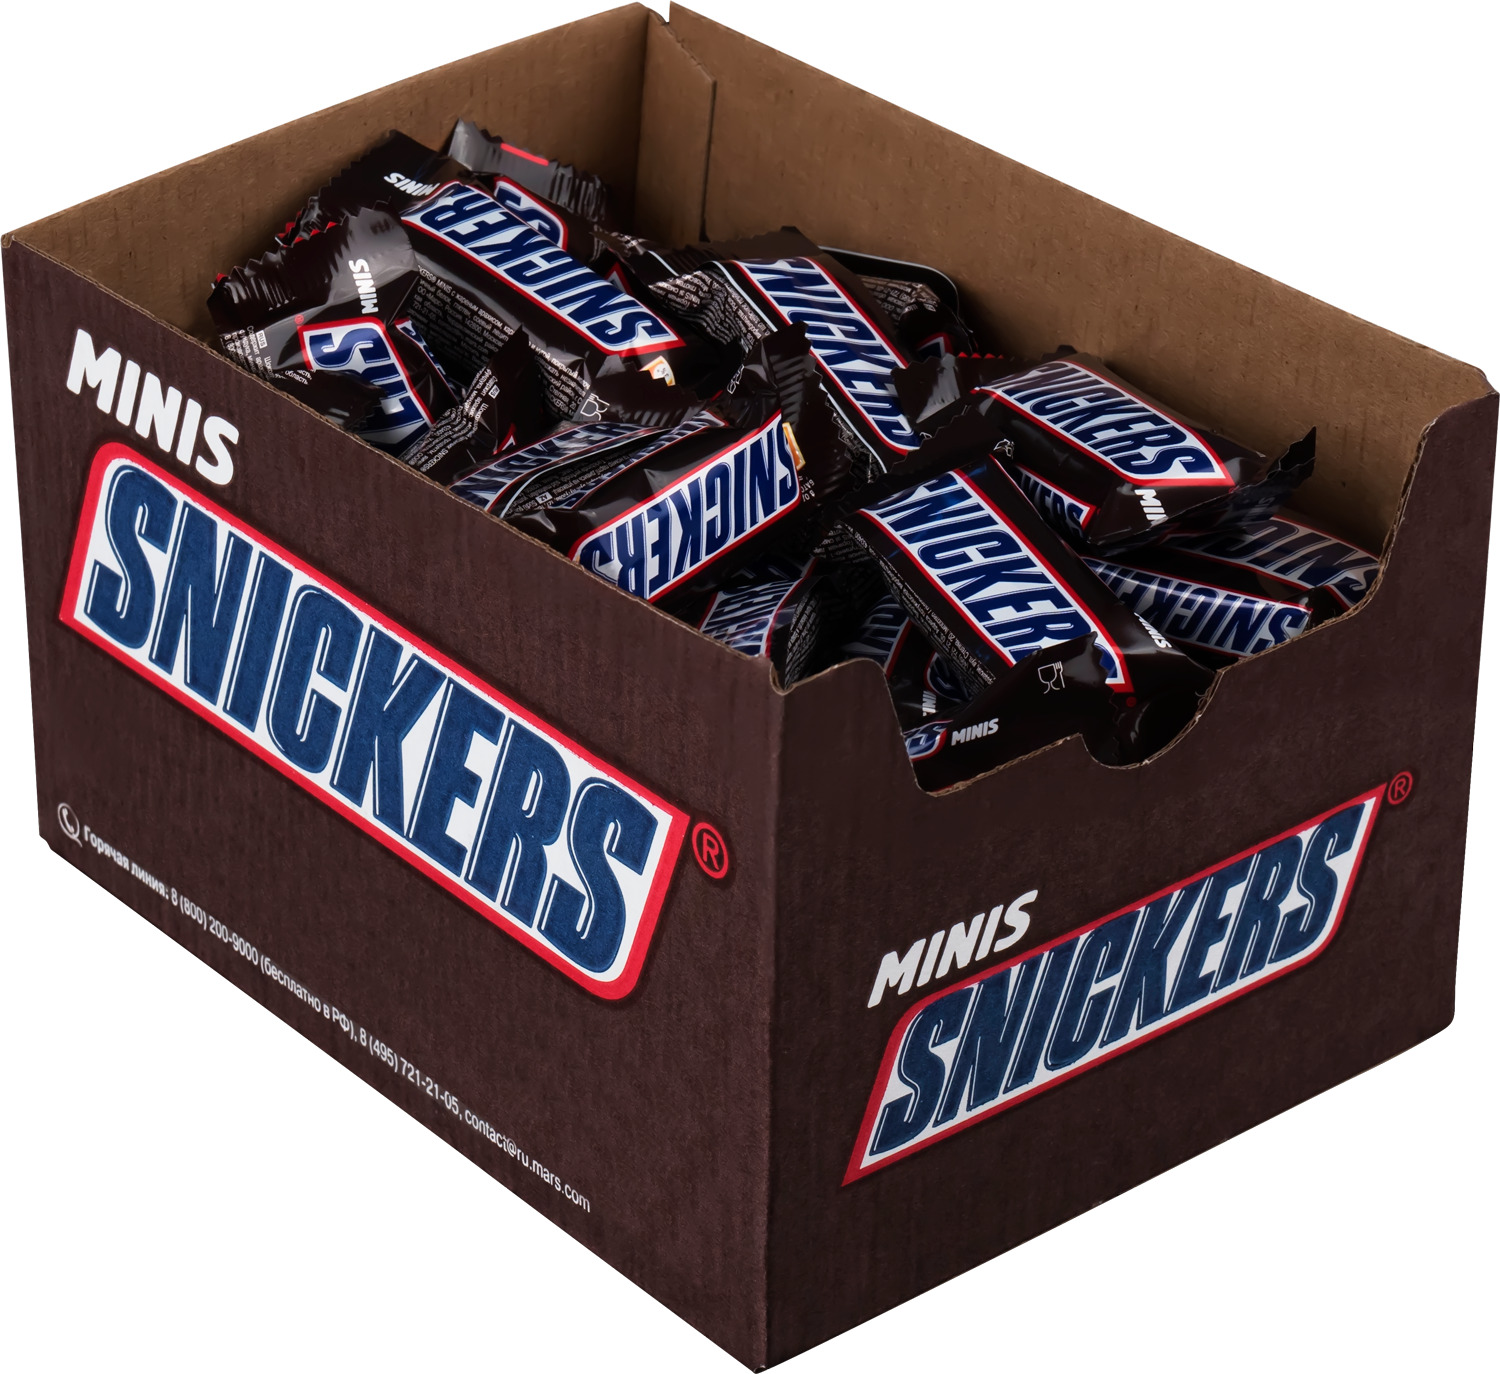 Шоколадные конфеты Snickers Minis, Молочный шоколад, Арахис, Нуга, Карамель, Коробка, 1кг - купить в Мегамаркет Спб, цена на Мегамаркет